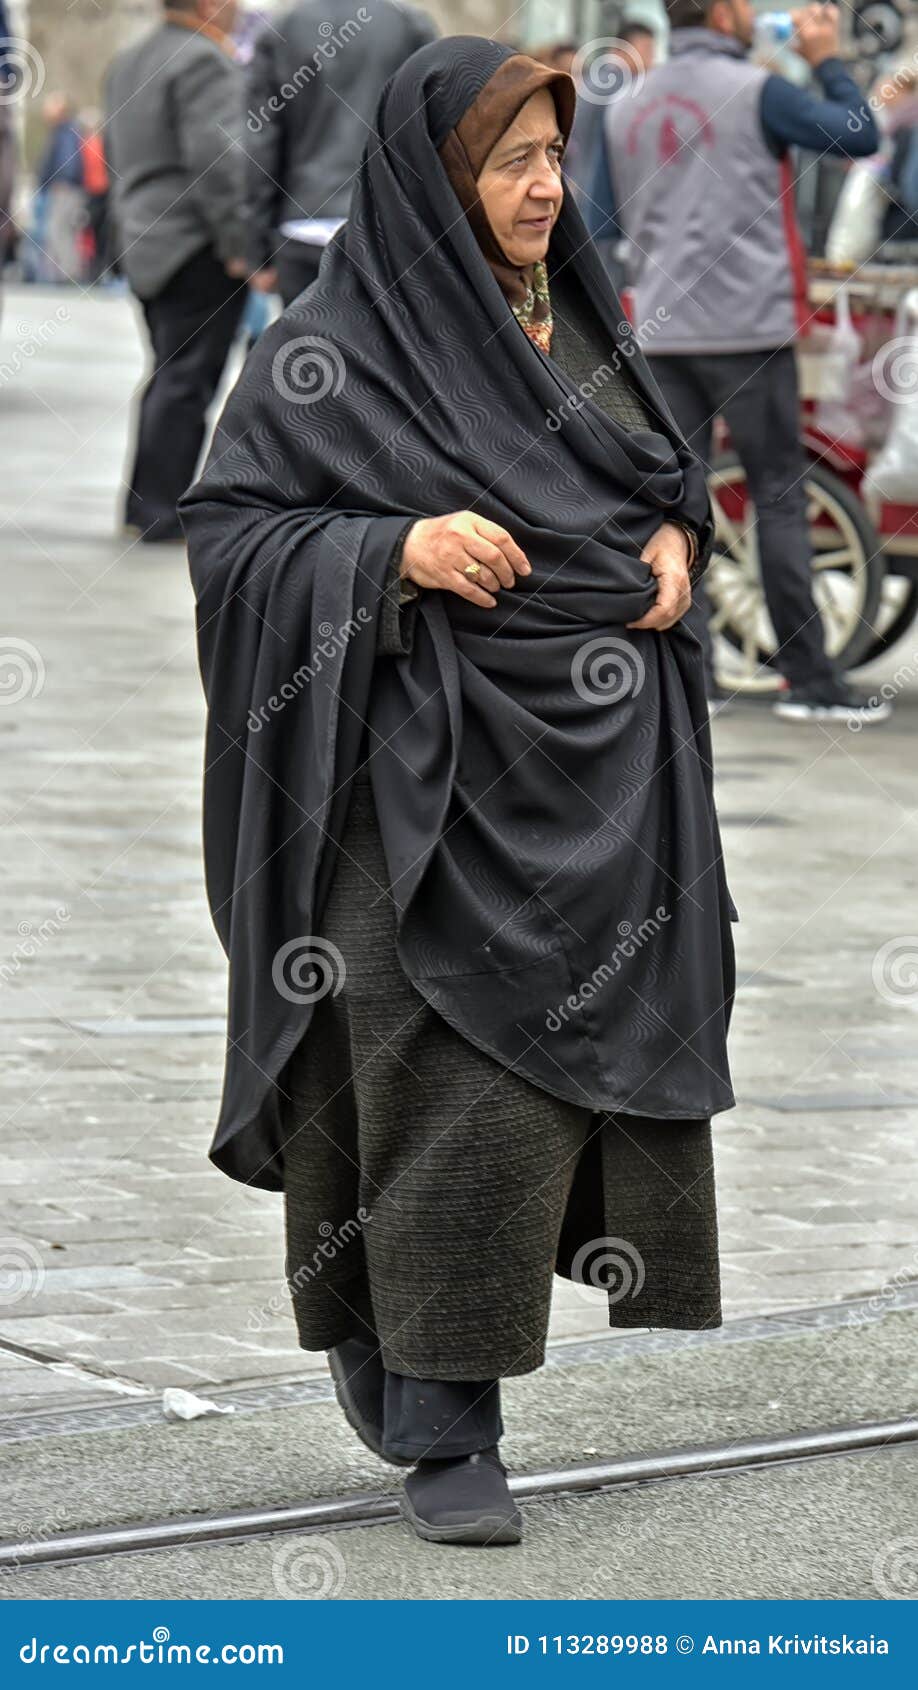 Top inch zout Niet Geïdentificeerde Turkse Vrouwen in Traditionele Islamitische Kleding  Op De Straten Van De Stad Redactionele Stock Foto - Image of wijfje, kleding:  113289988